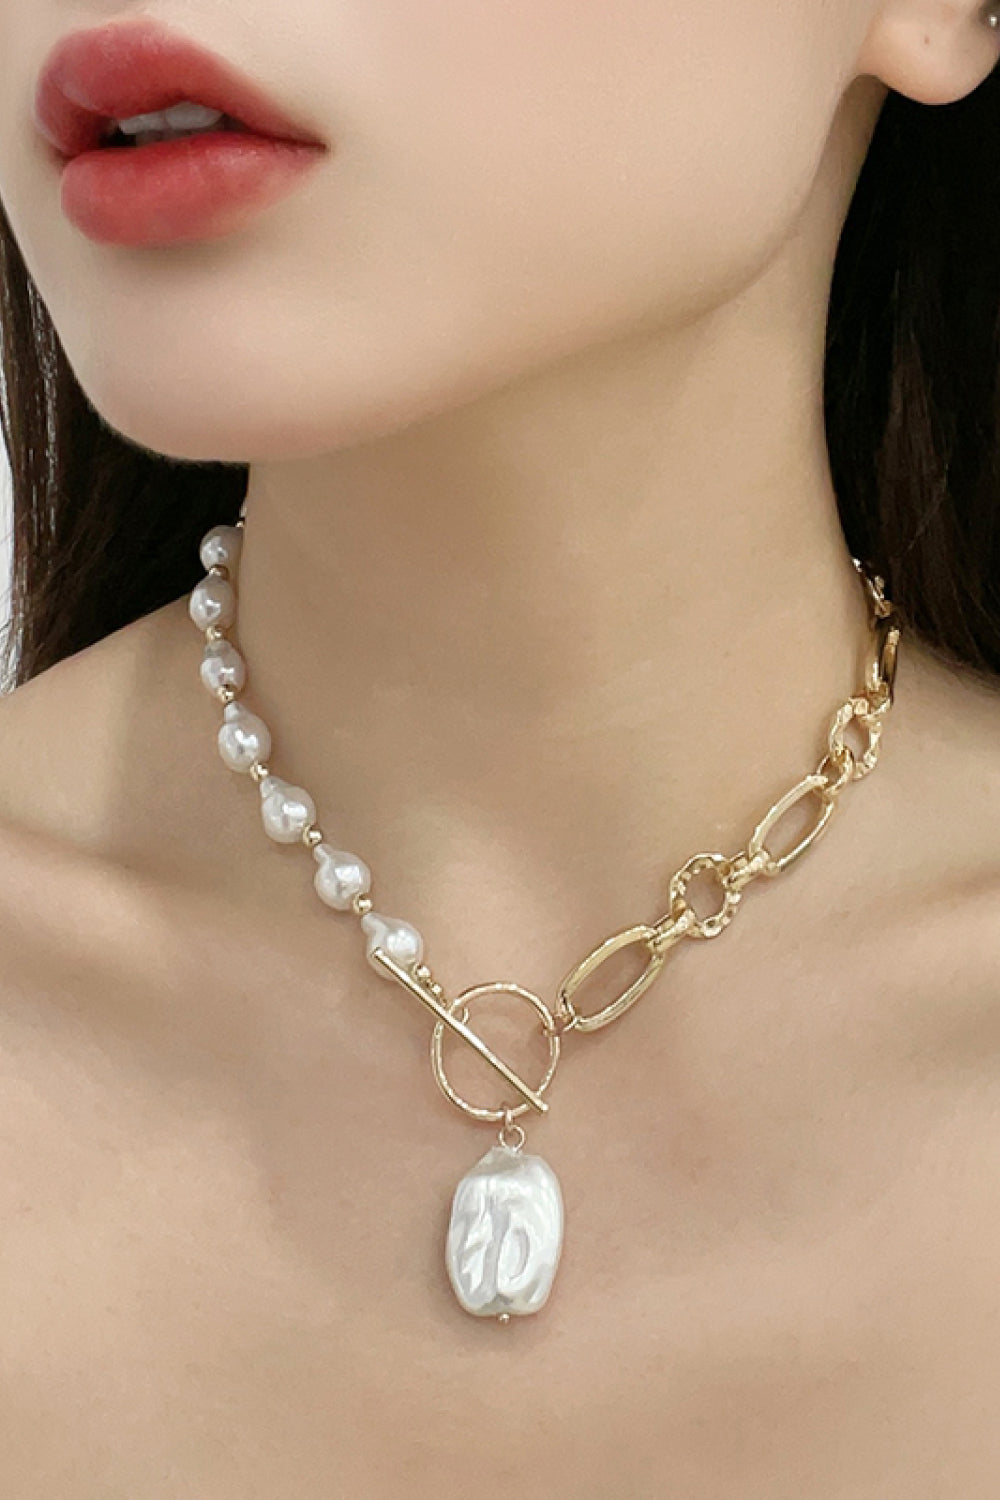 Women's Half Pearl Half Chain Toggle Clasp Necklace